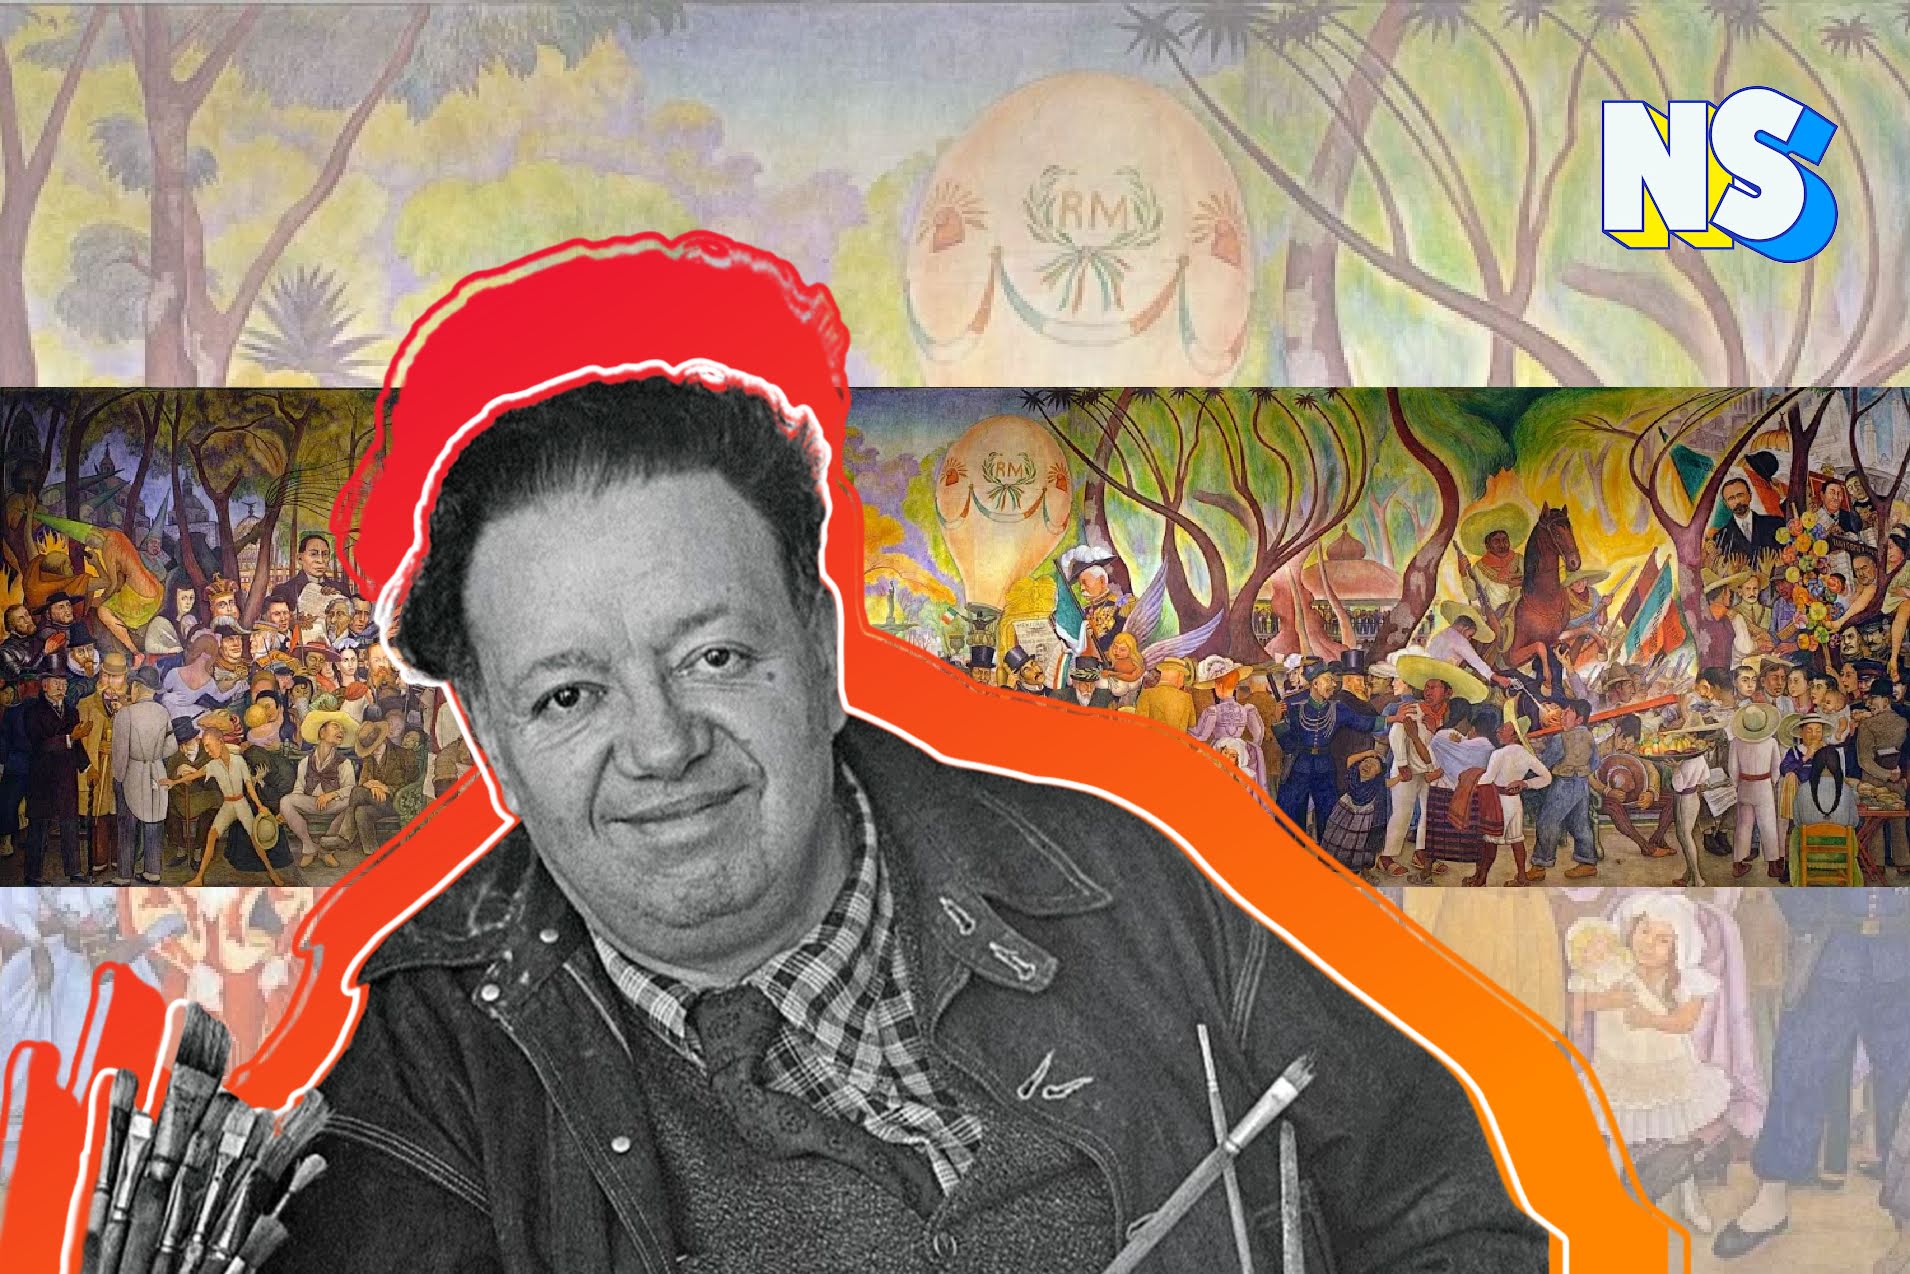 Unpacking the Many Stories in Diego Rivera’s ‘Sueño de una tarde dominical en la Alameda Central’ Mural